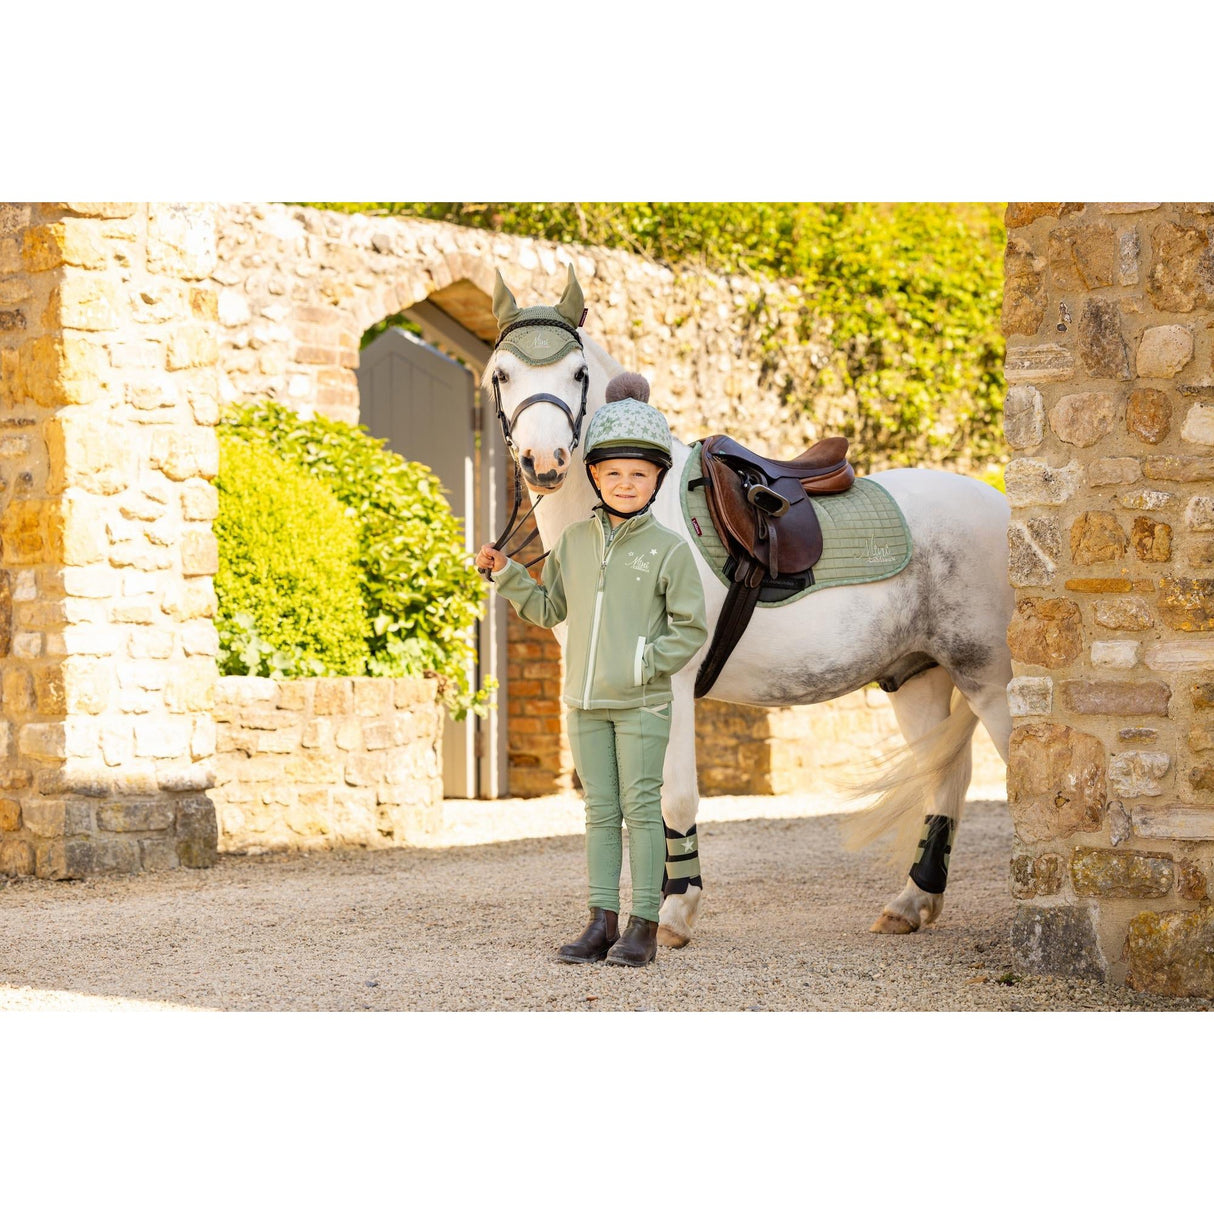 Lemieux Mini Suede Jump Square Fern Saddle Pads & Numnahs Barnstaple Equestrian Supplies